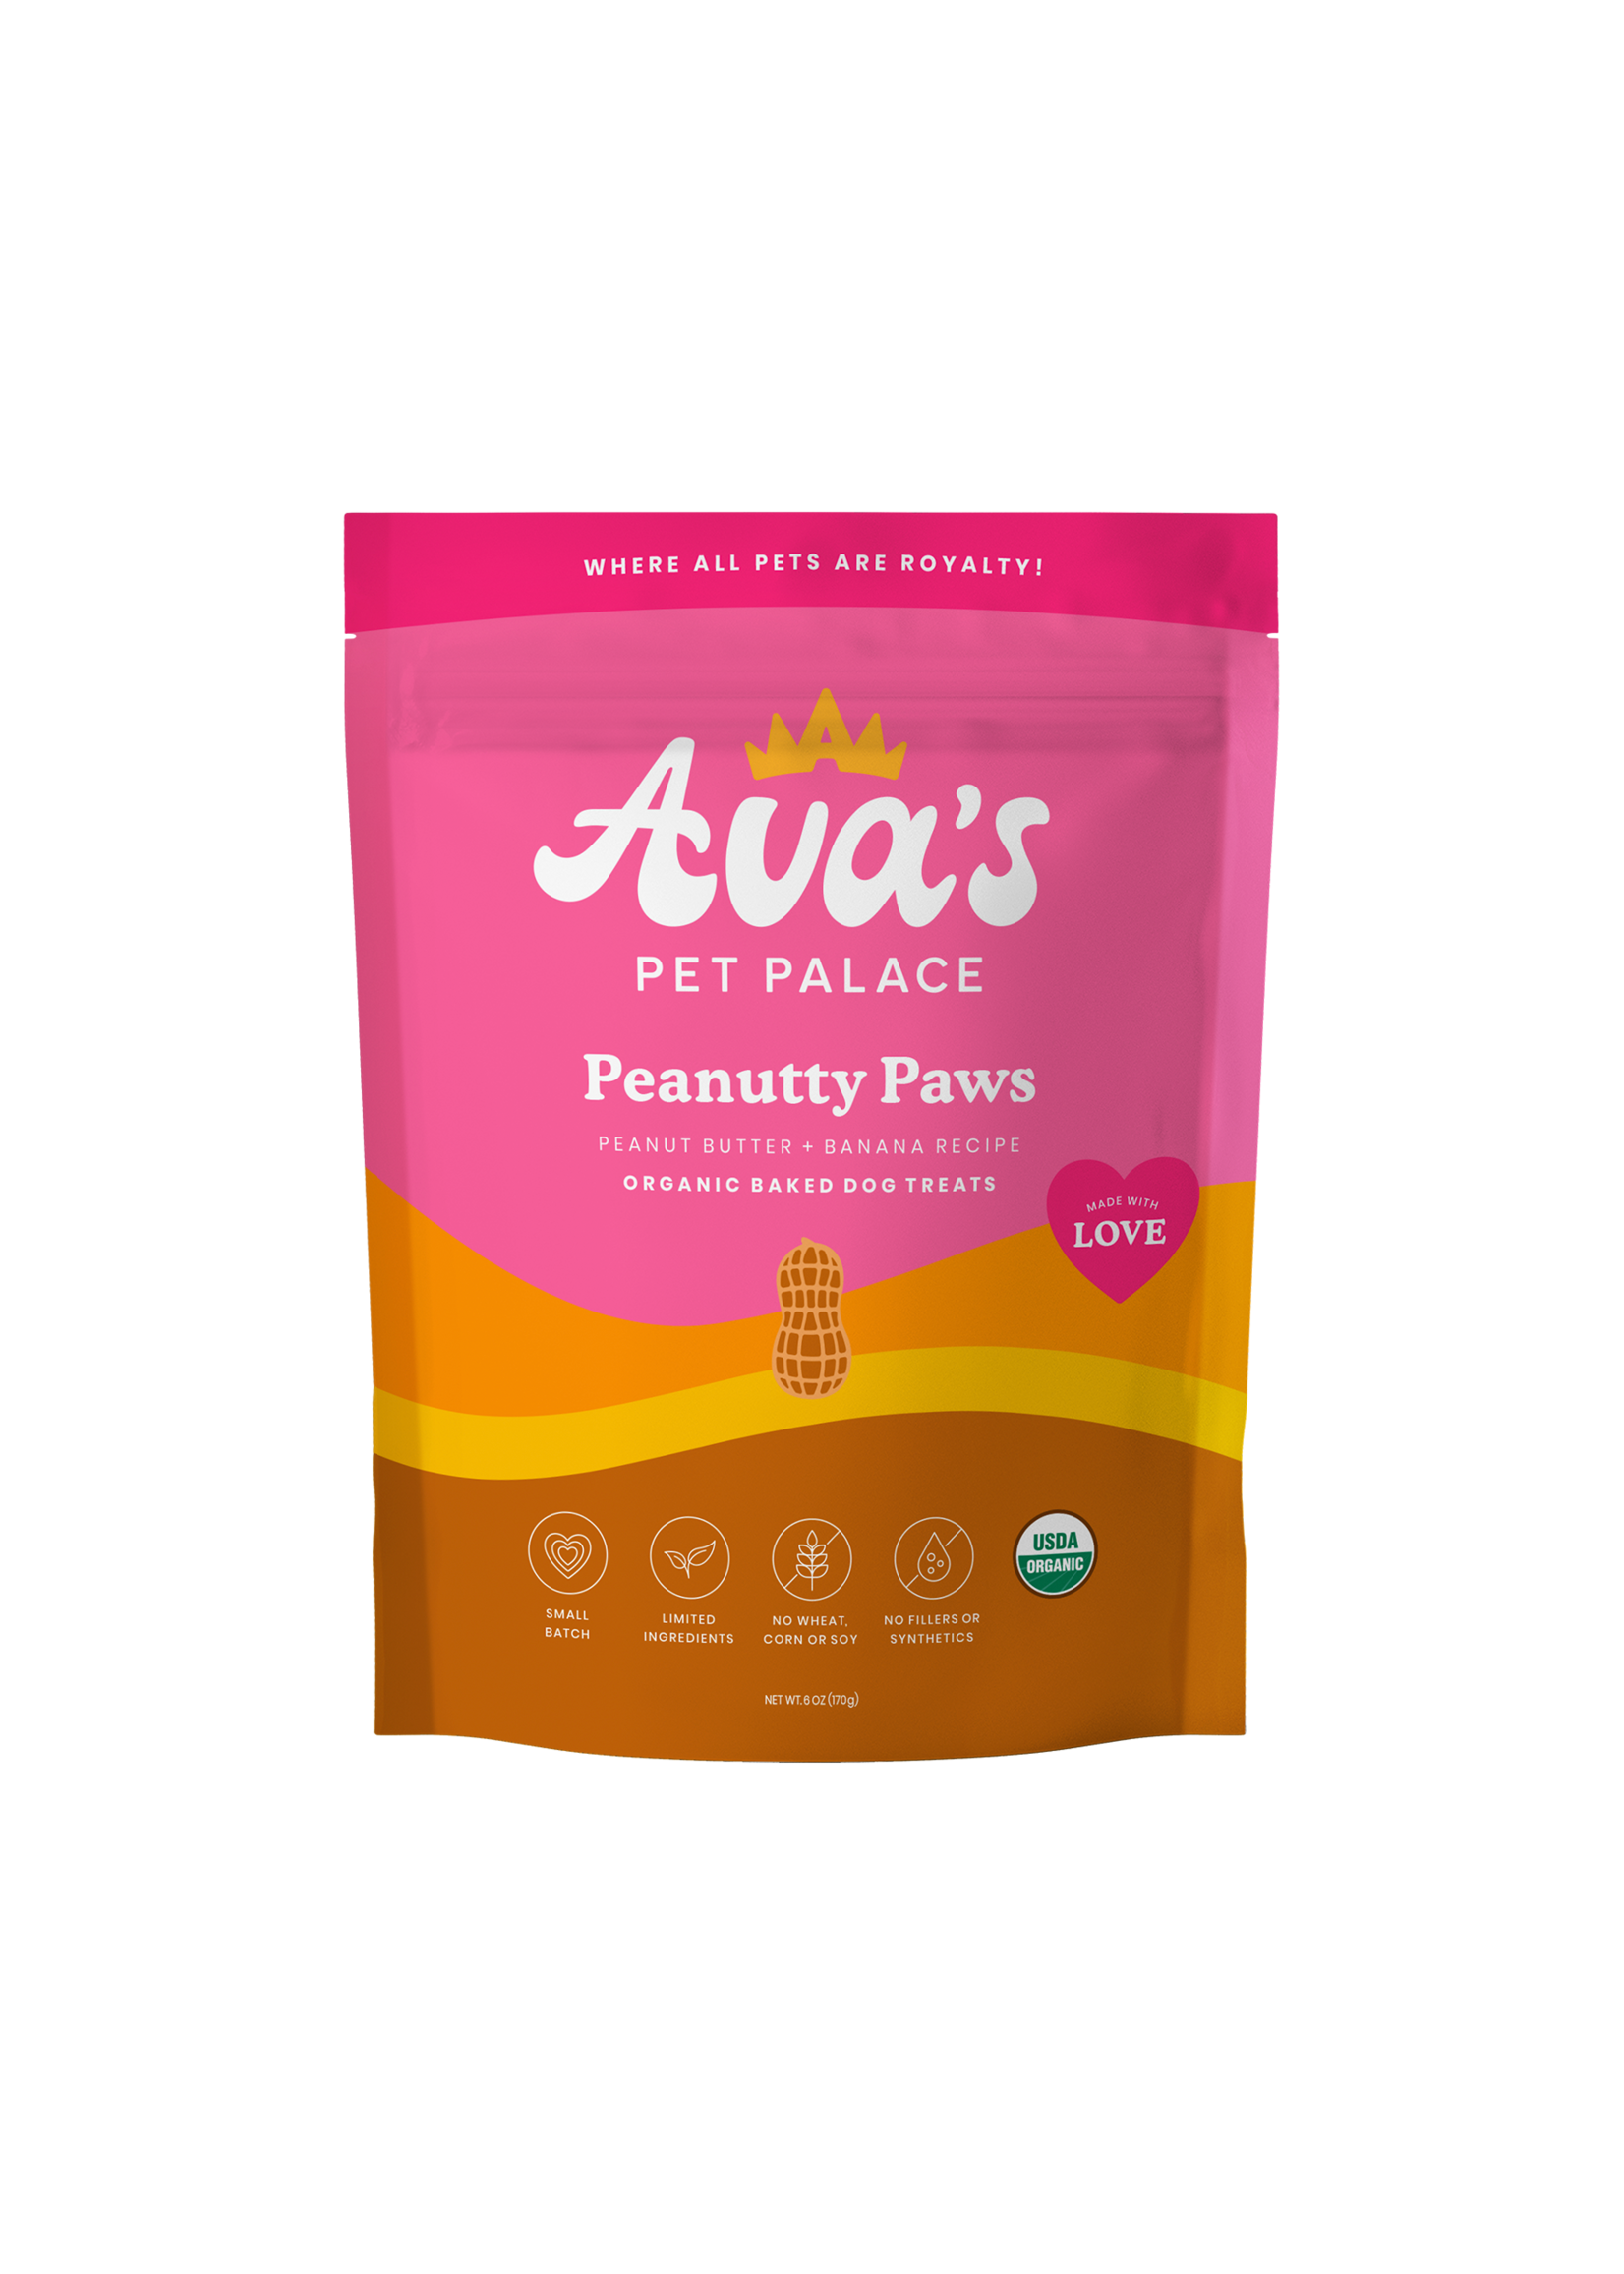 Ava's Pet Palace Organic Baked Dog Treats - Peanutty Paws